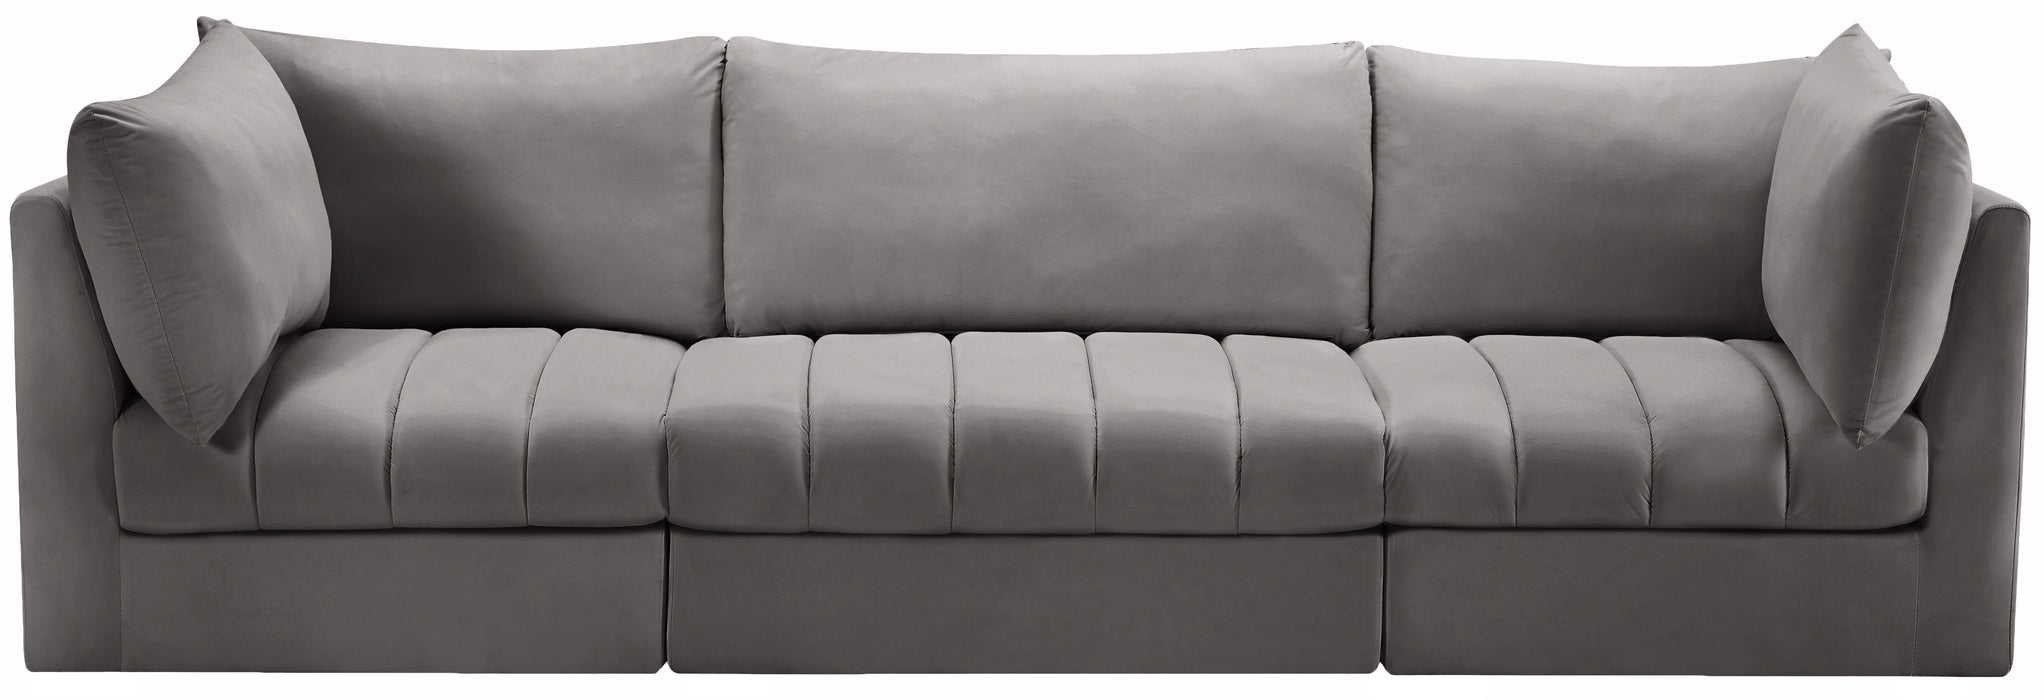 Jacob - Modular 3 Seat Sofa